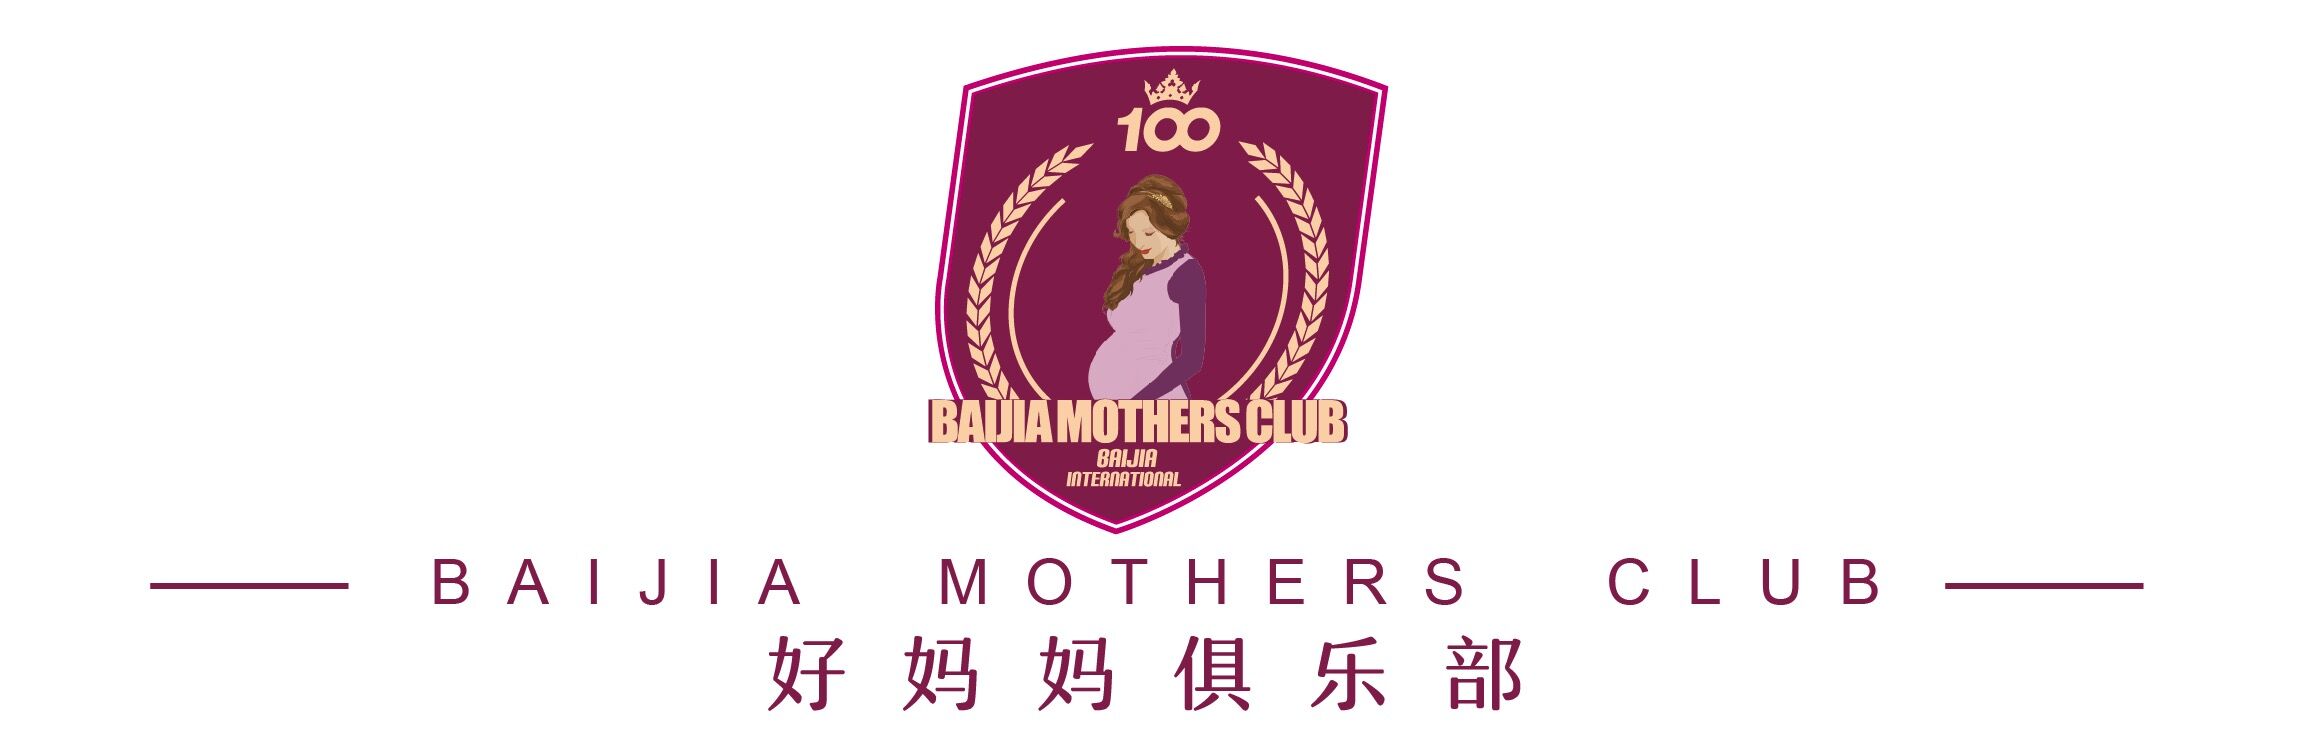 上海百佳妇产医院好妈妈俱乐部